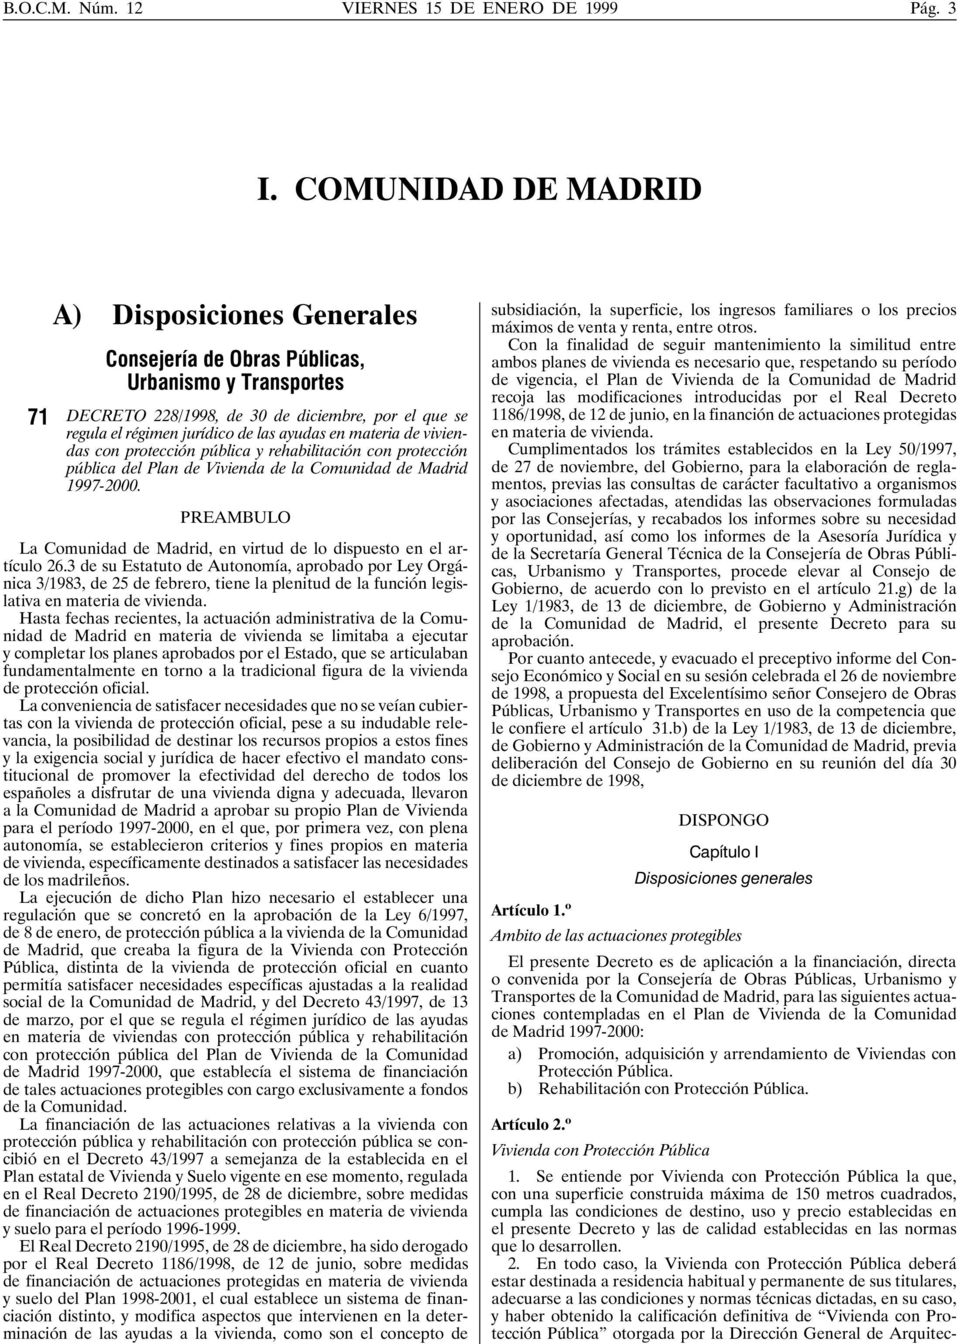 materia de viviendas con protección pública y rehabilitación con protección pública del Plan de Vivienda de la Comunidad de Madrid 1997-2000.